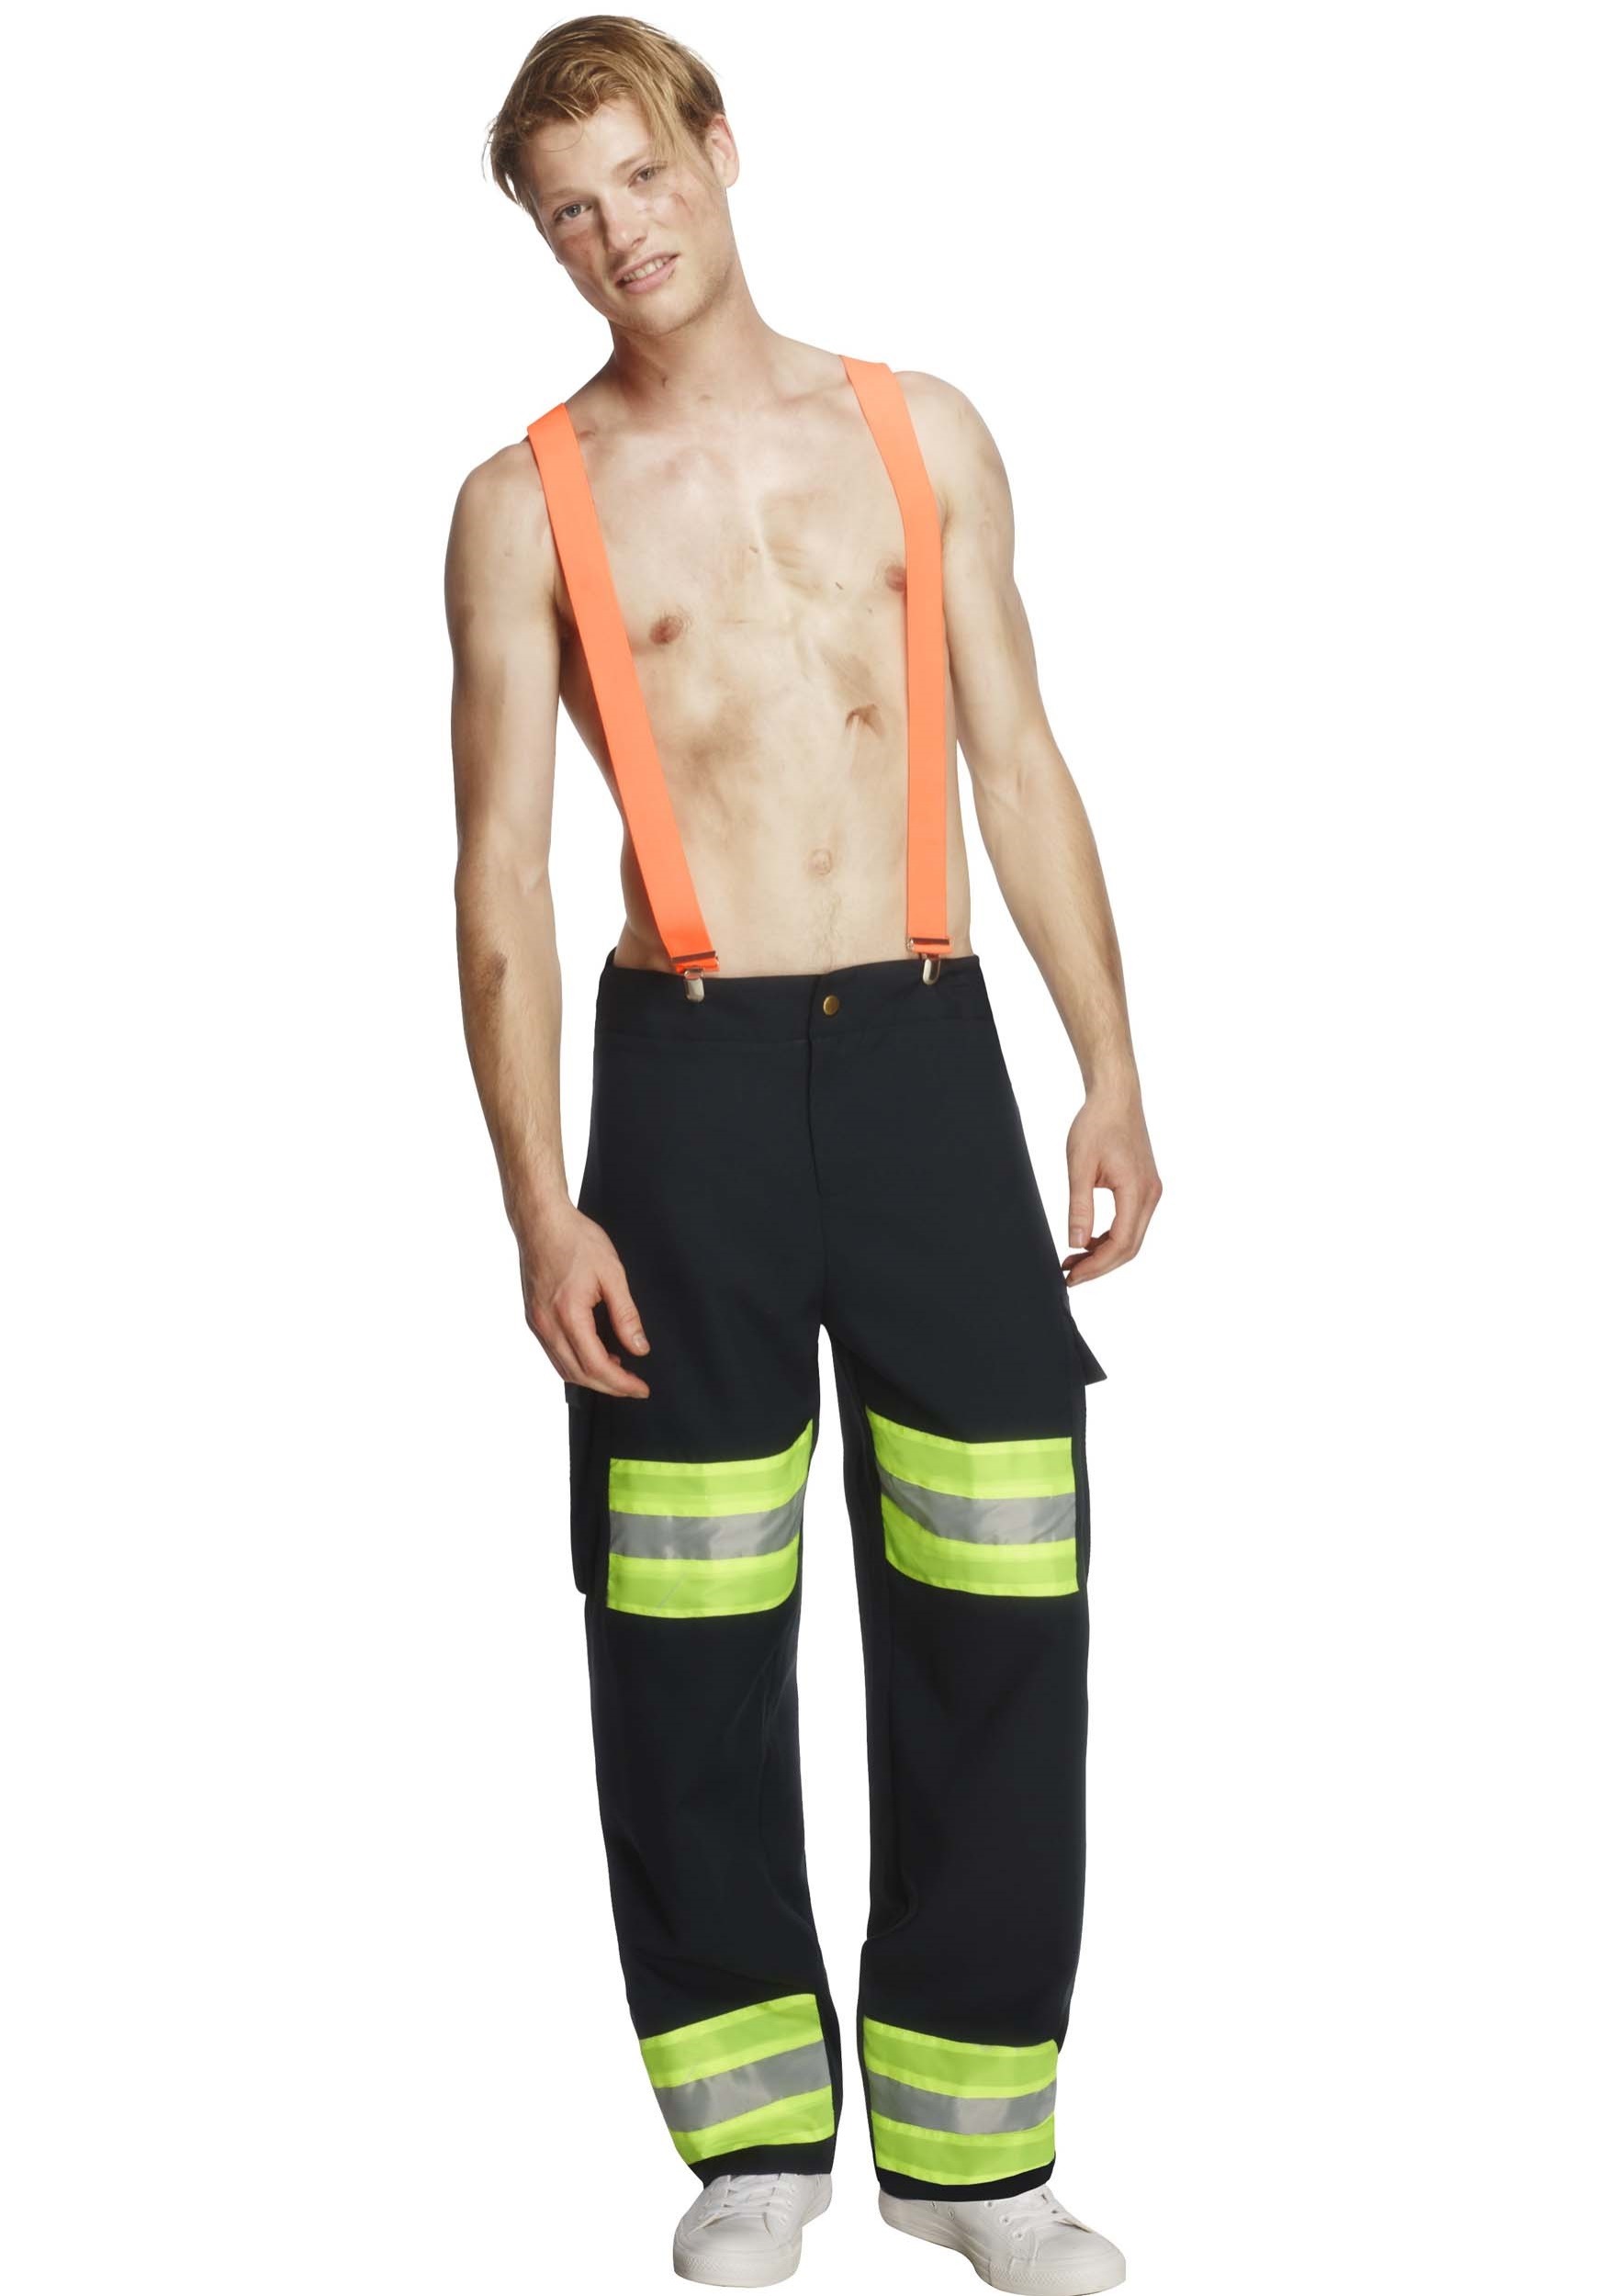 Blazing Hot Firefighter Costume for Men